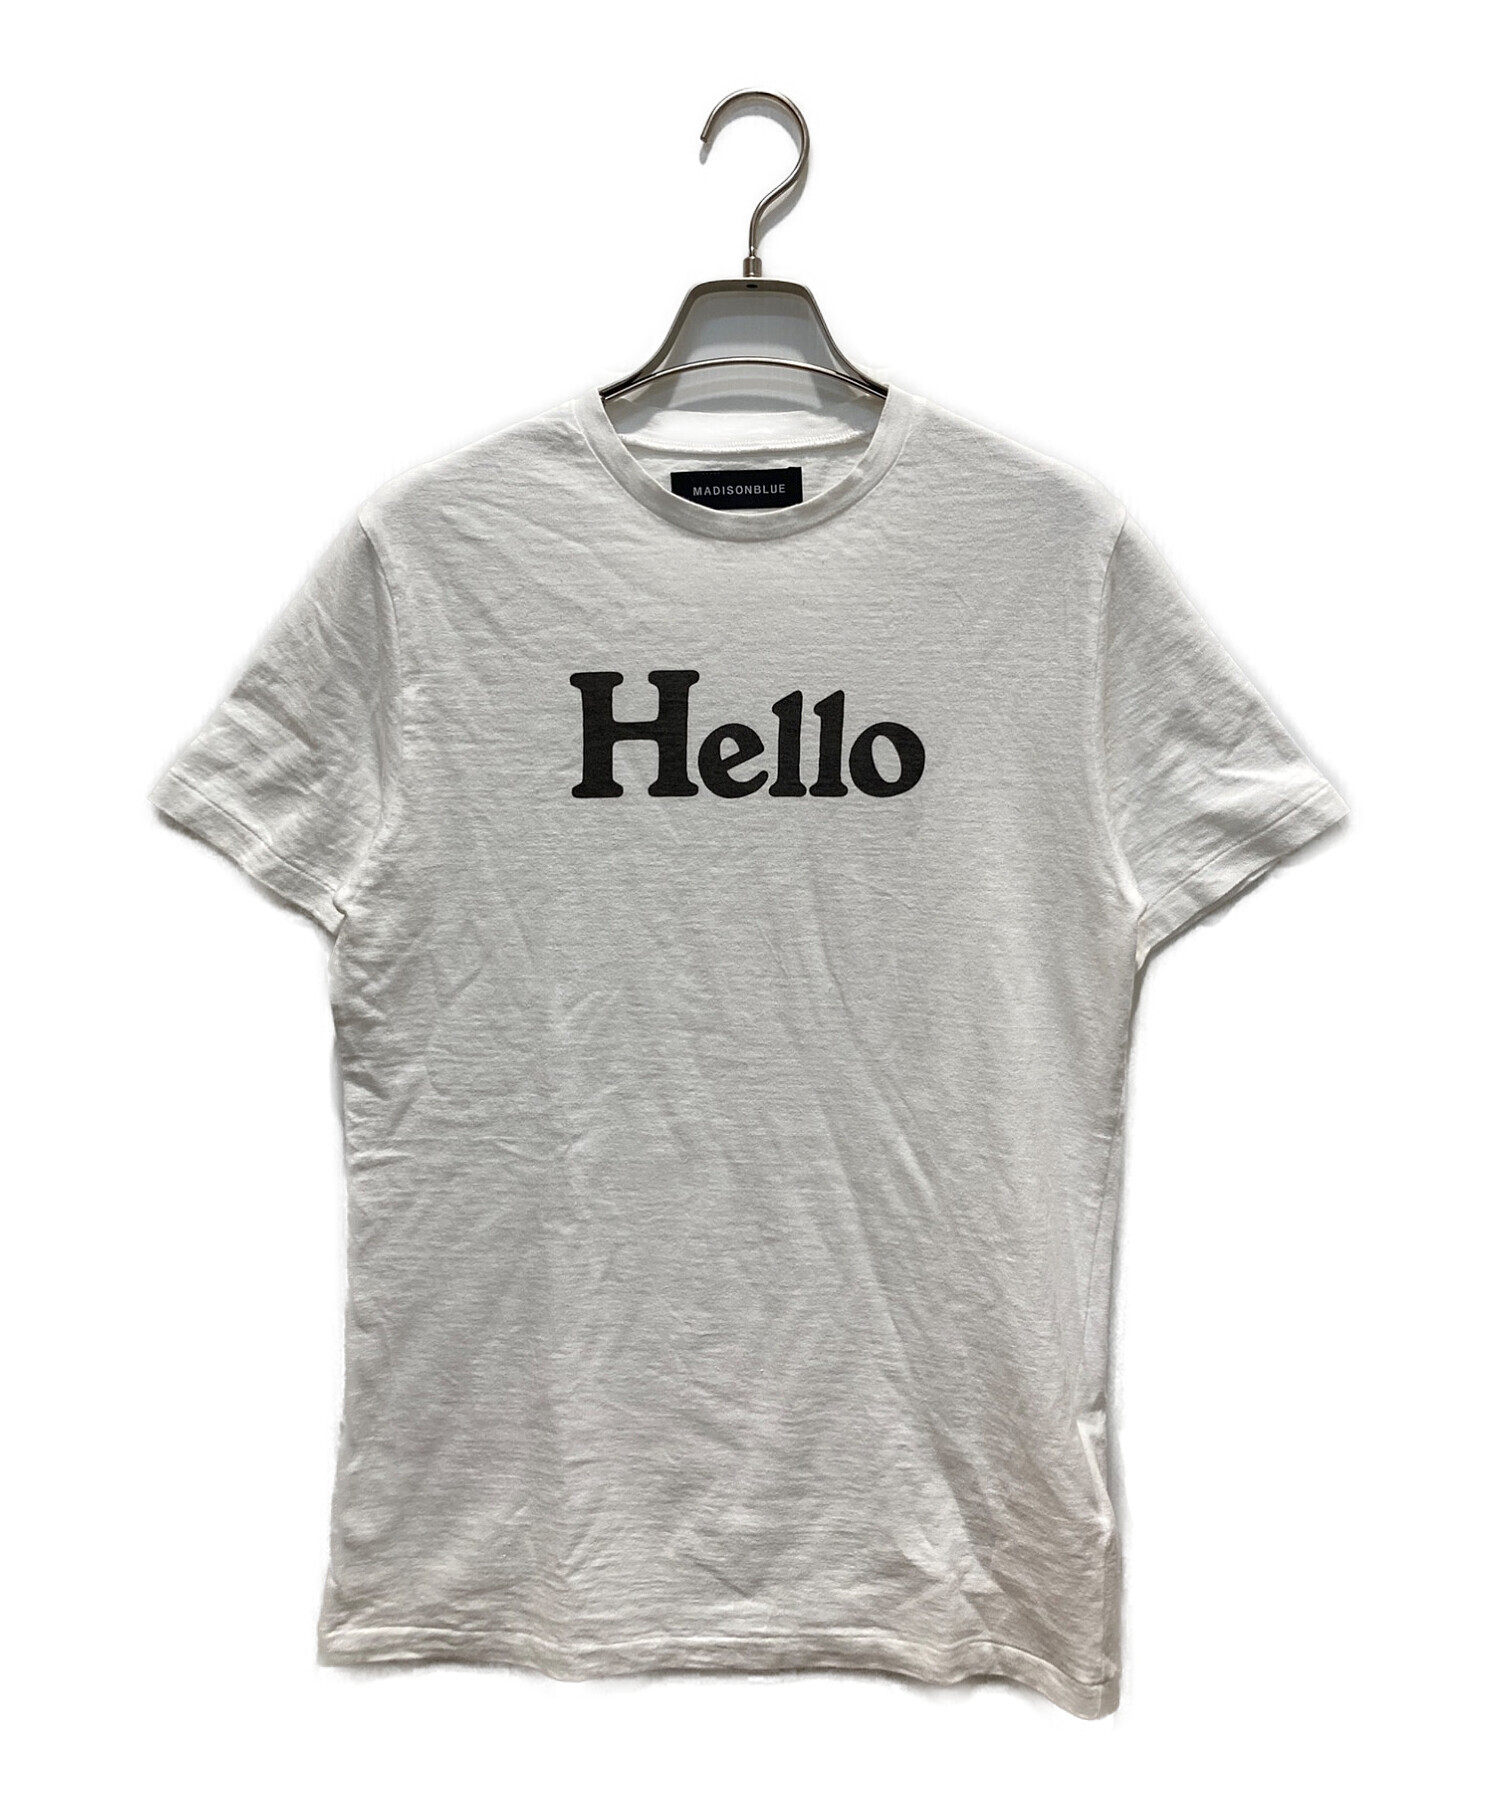 トップスMADISONBLUE マディソンブルー HELLO Tシャツ - Tシャツ(半袖